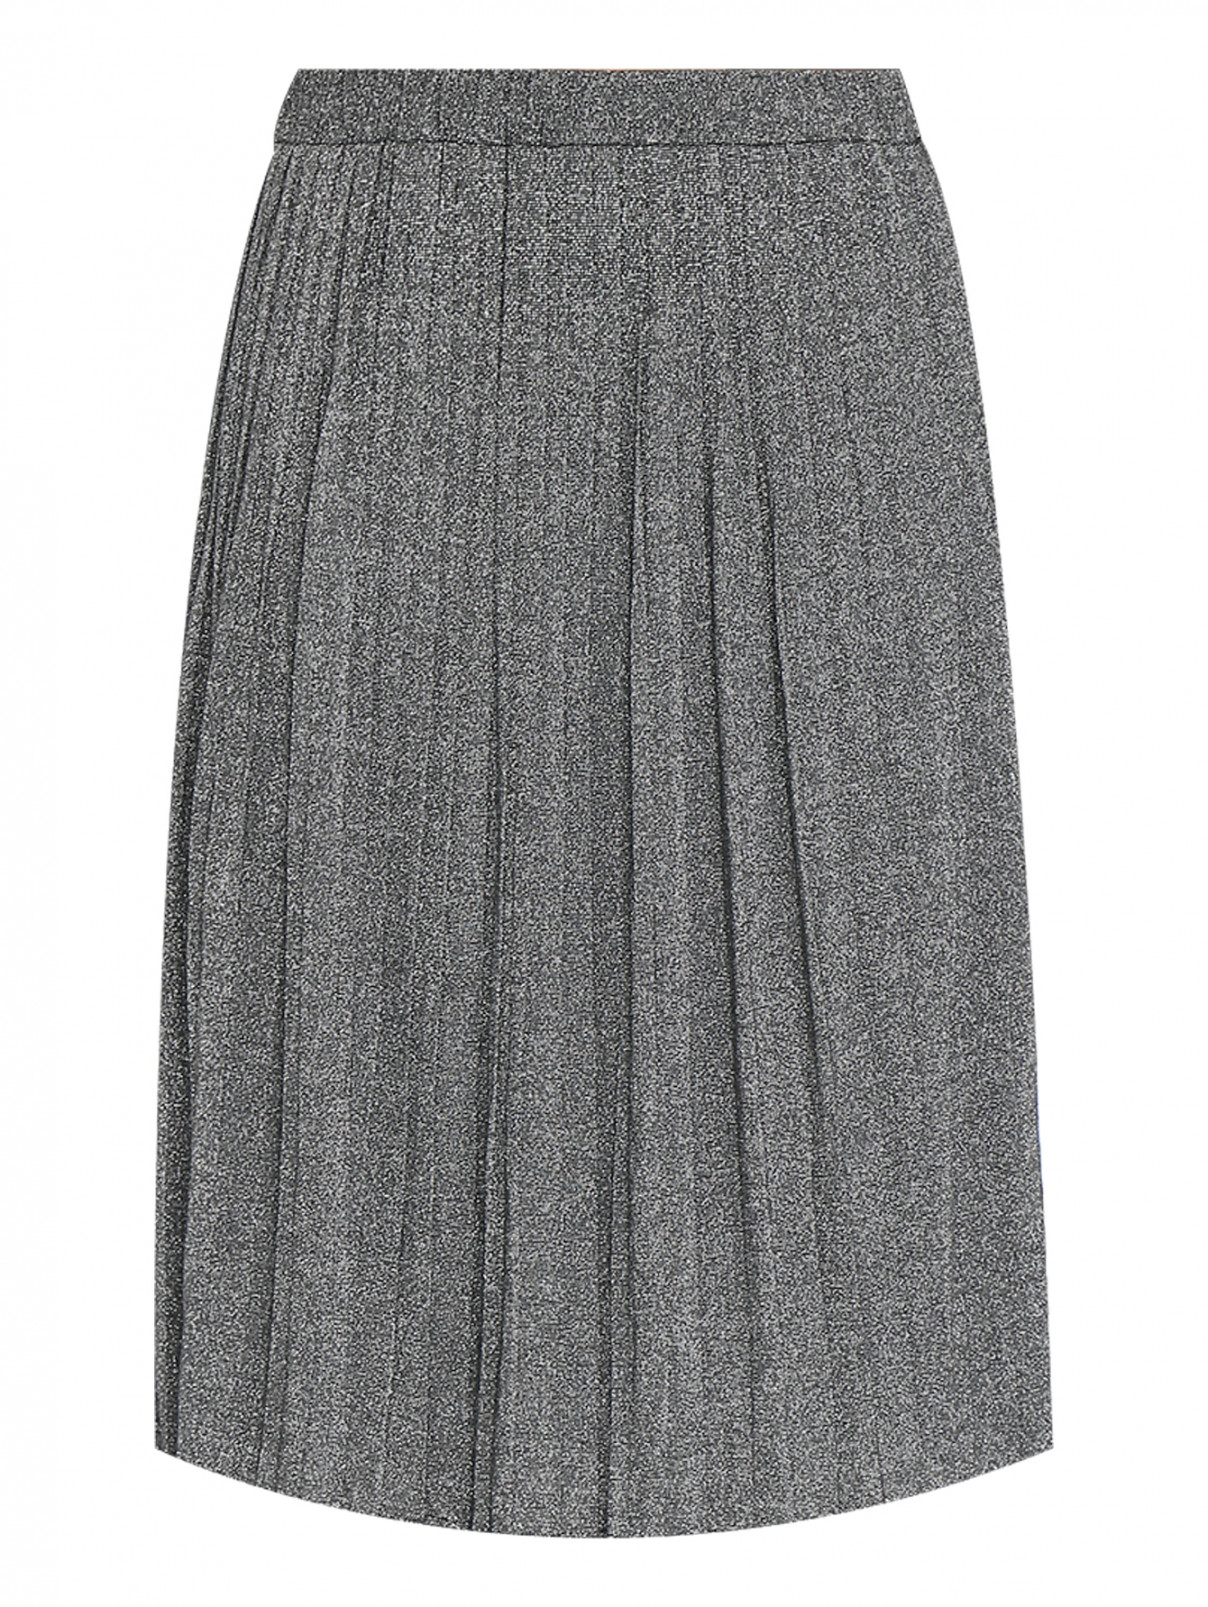 Юбка-плиссе с металлизированной нитью Elena Miro  –  Общий вид  – Цвет:  Серый